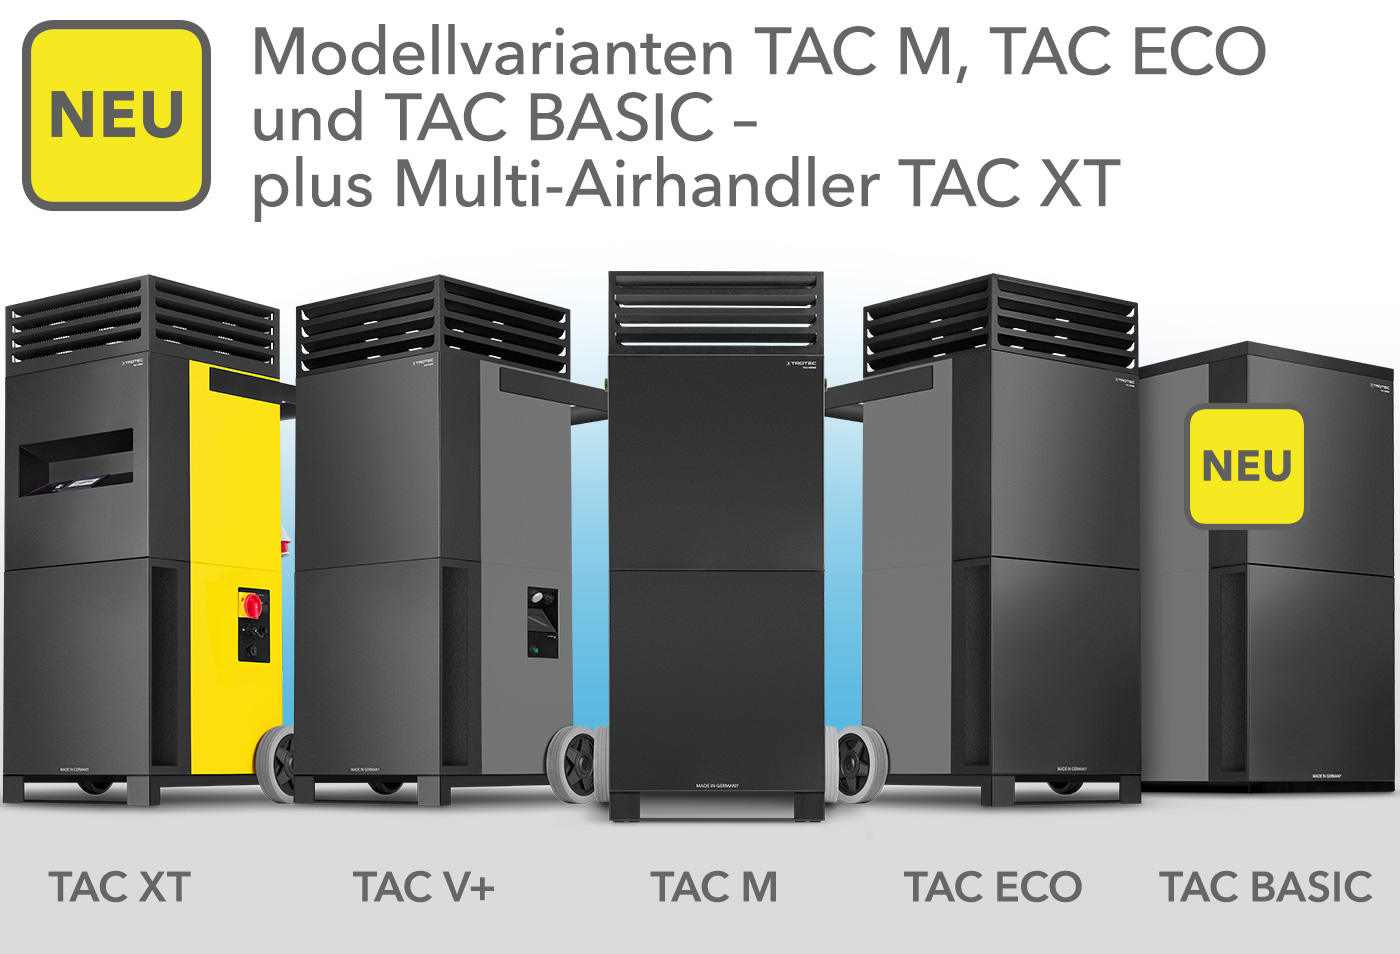 Variantele de model TAC M și TAC ECO